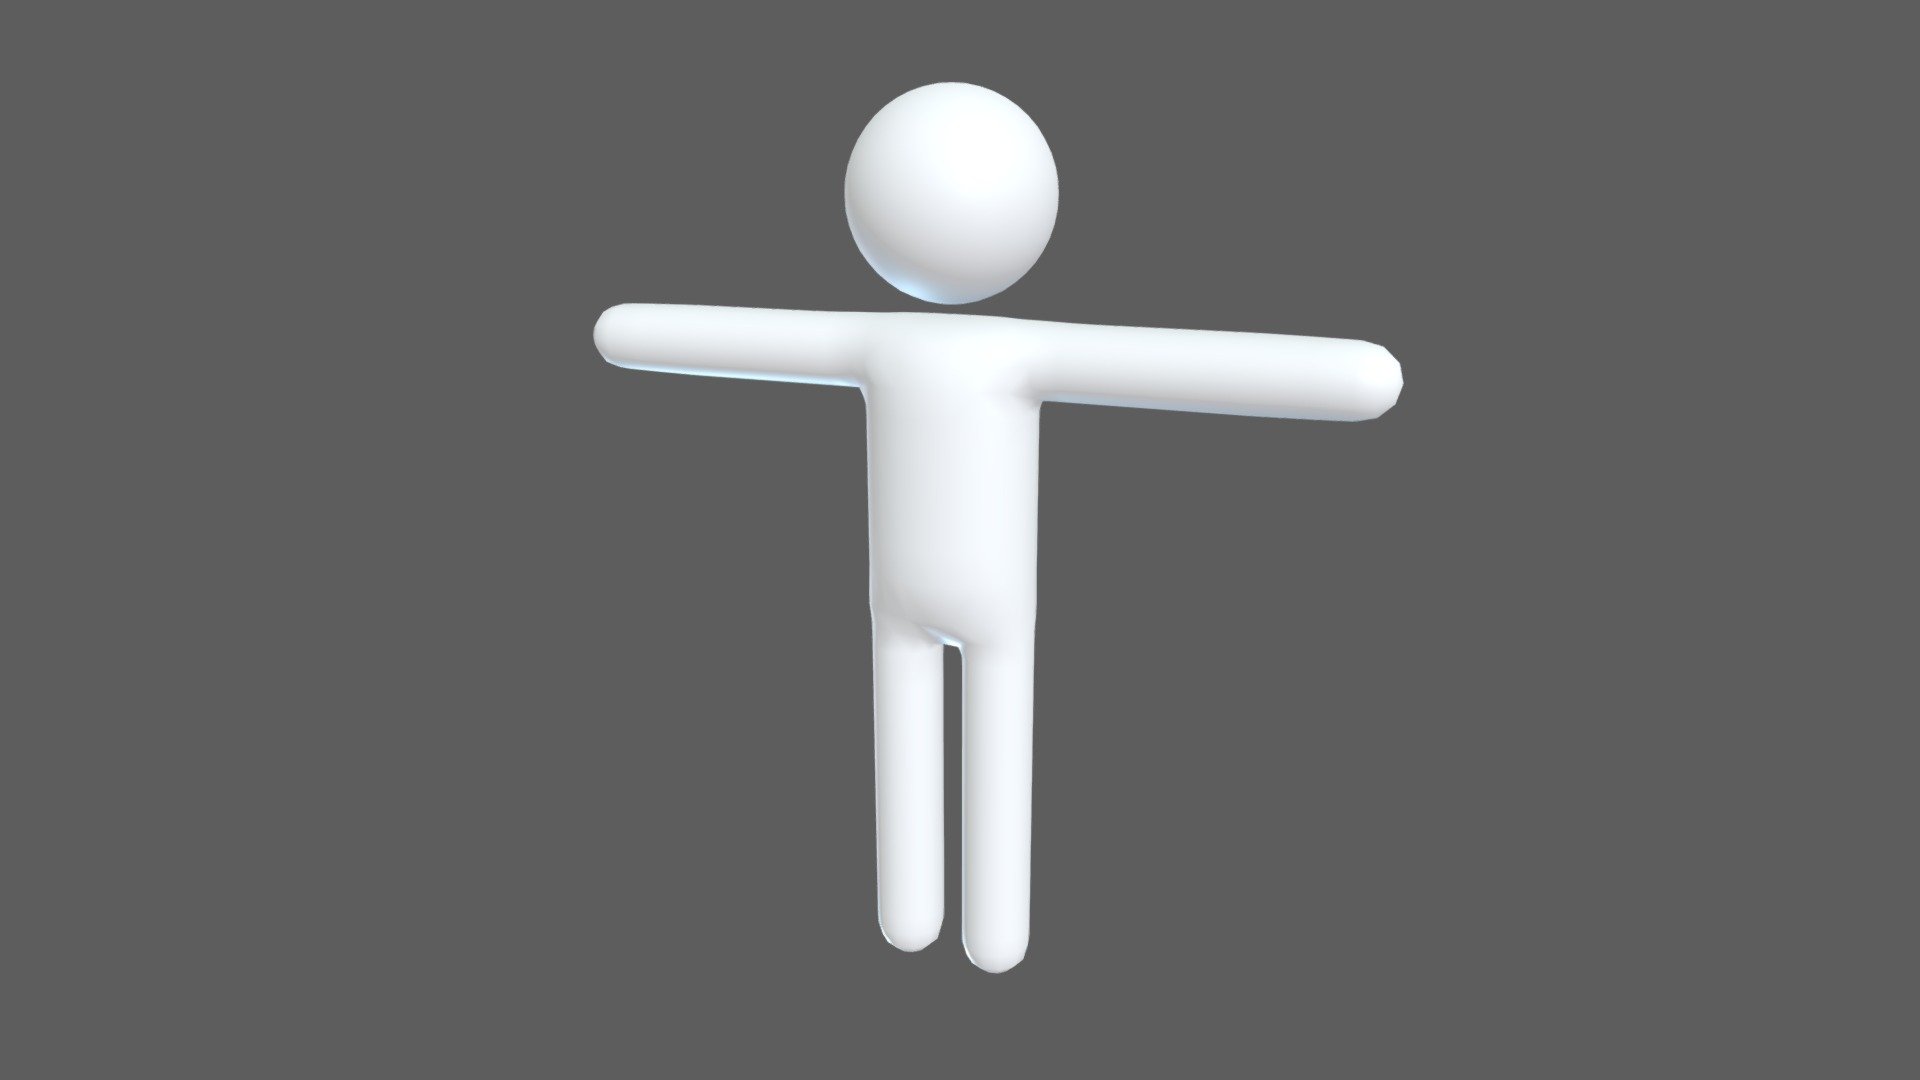 Stickman 3D Models for Download